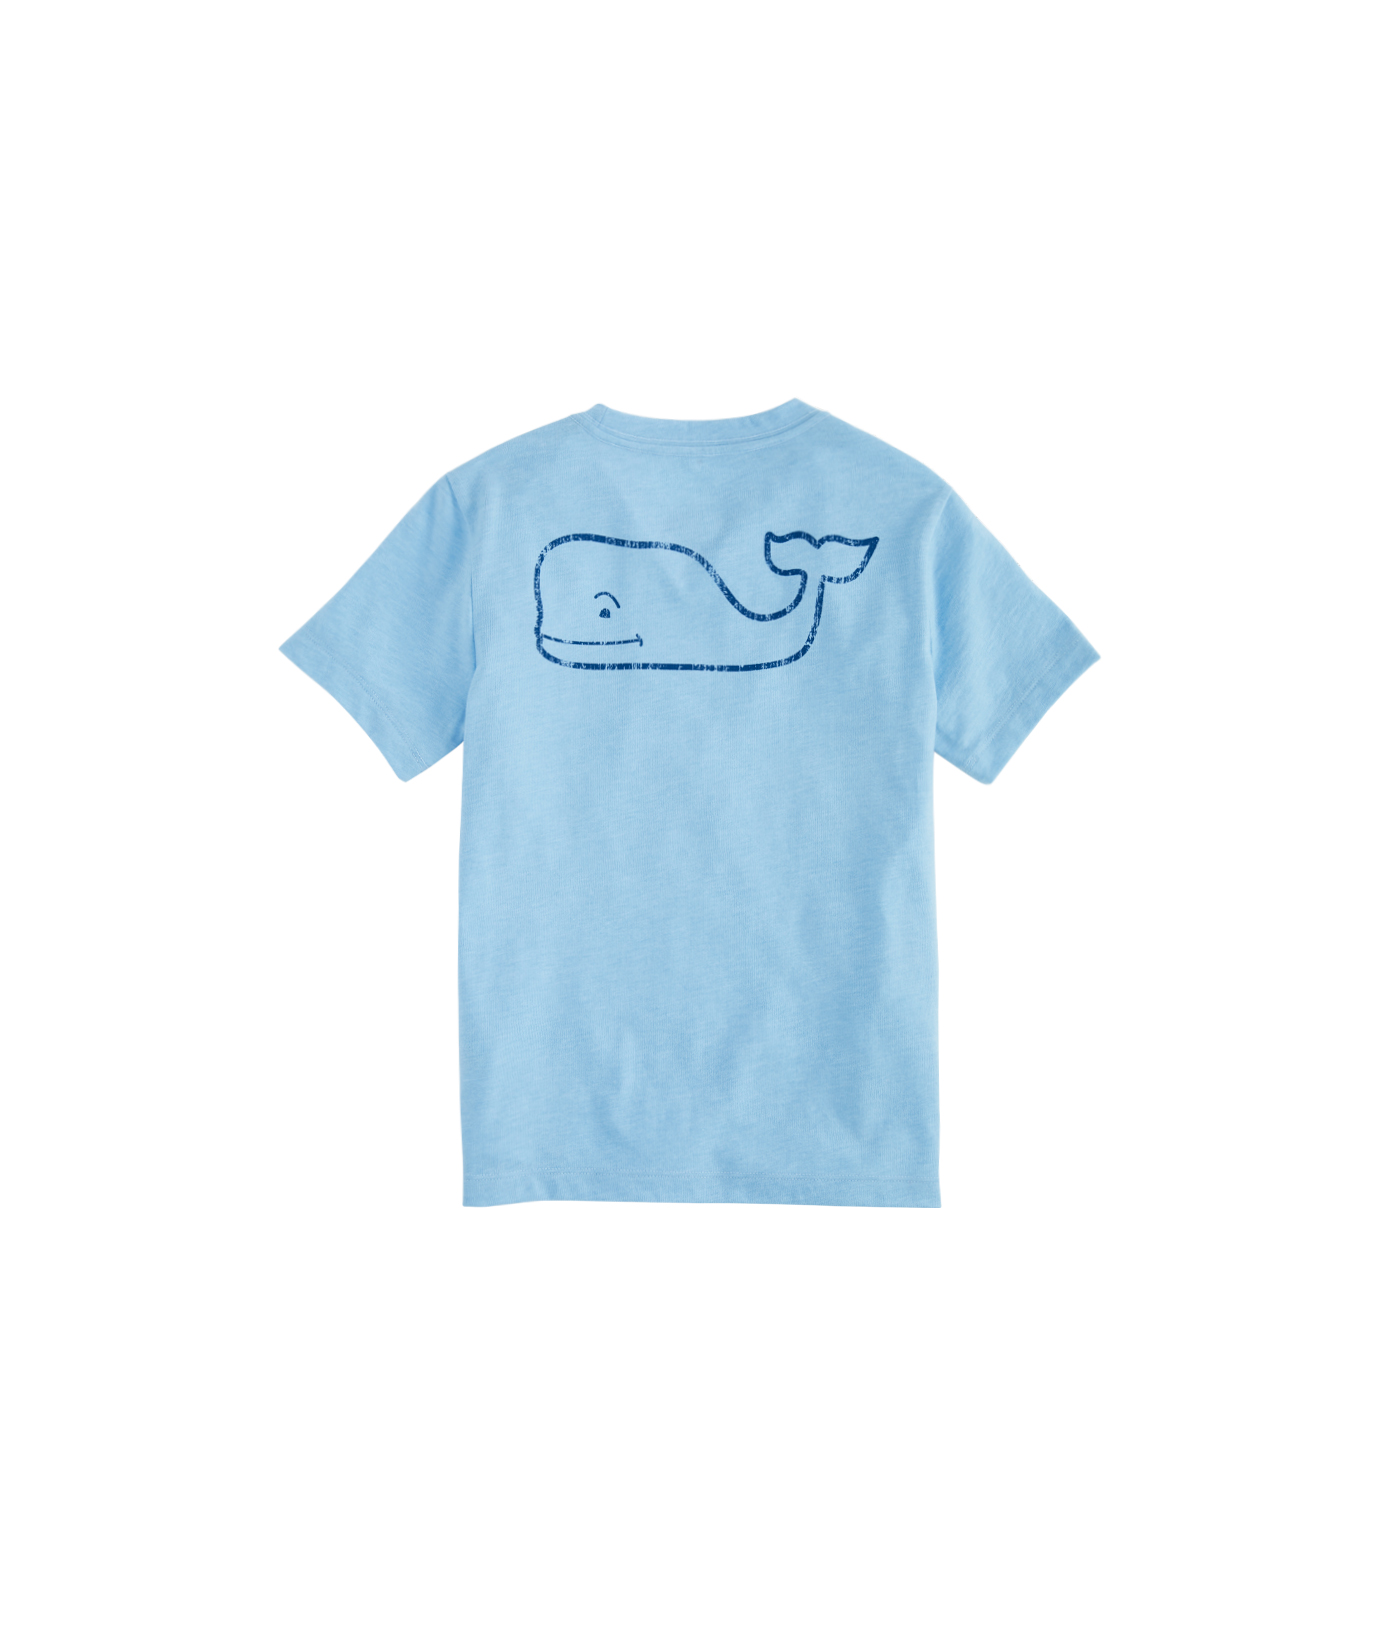 Shop Boys Vintage Whale Island Ringer Pocket T-Shirt at vineyard vines